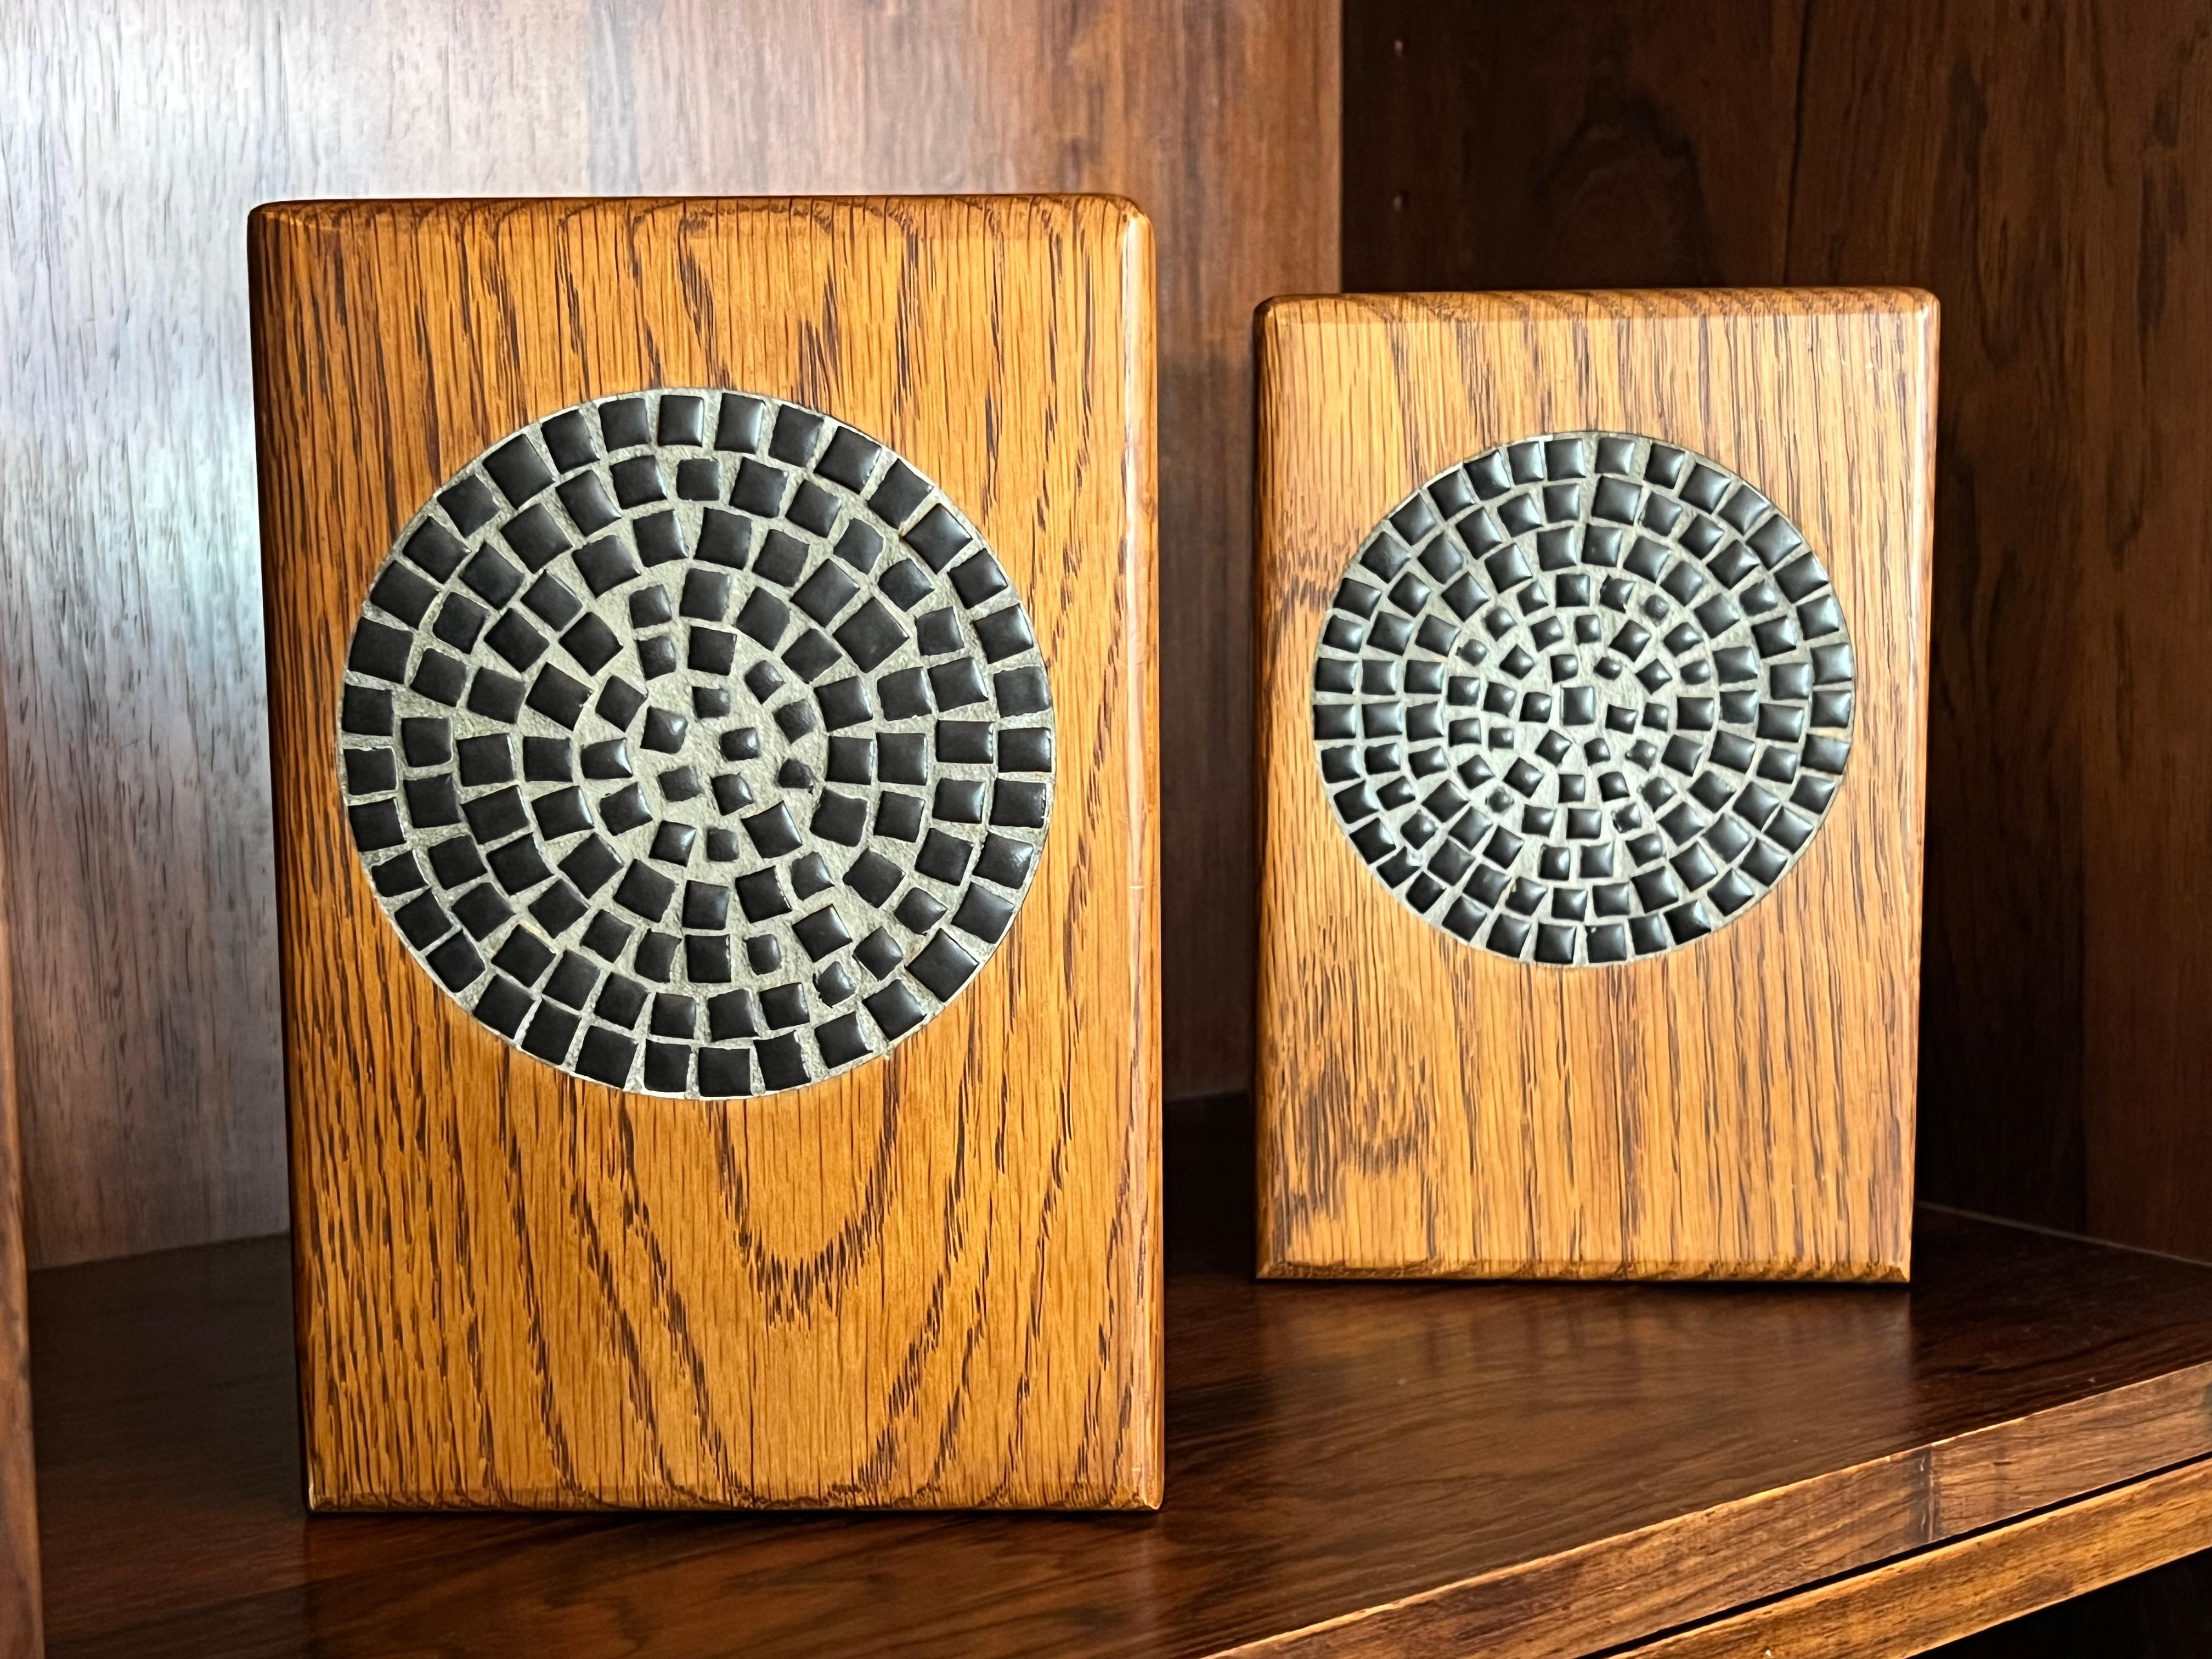 Schönes Paar Buchstützen von Jane und Gordon Martz für Marshall Studios, ca. 1960er Jahre. 

Diese Buchstützen sind aus Eichenholz gefertigt und mit einer schönen, mattschwarzen Keramik in einem Spiralmuster versehen. Dies ist ein schönes Beispiel